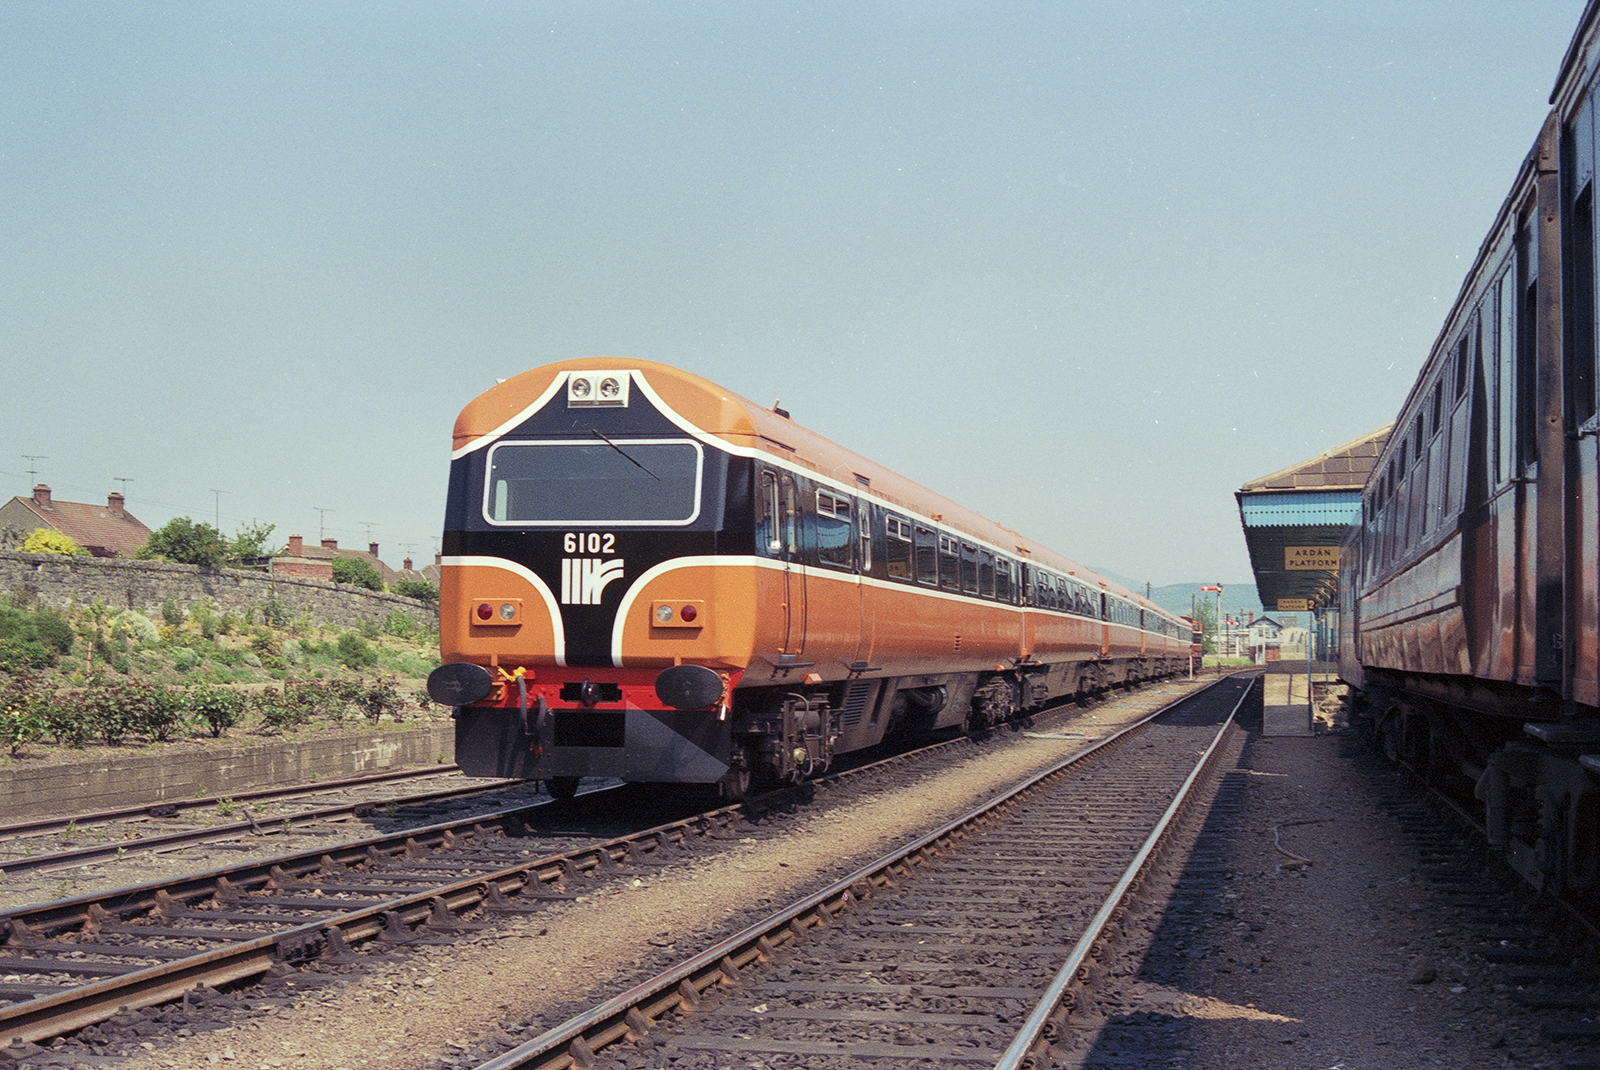 1989 New Iarnród Éireann train